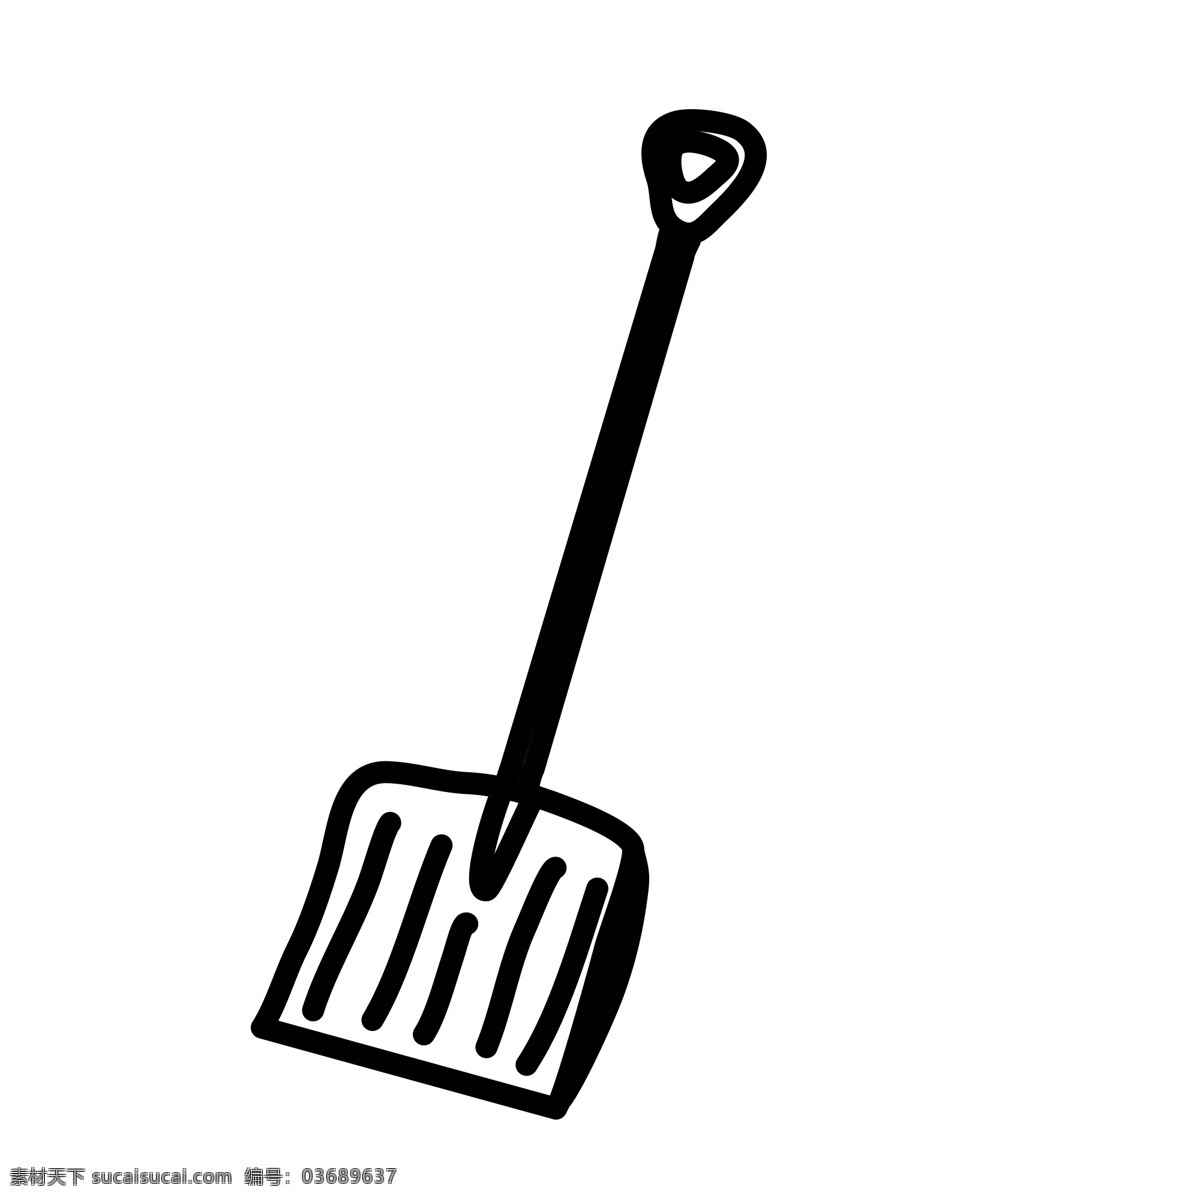 扁平化铲子 厨具 小铲子 扁平化ui ui图标 手机图标 界面ui 网页ui h5图标